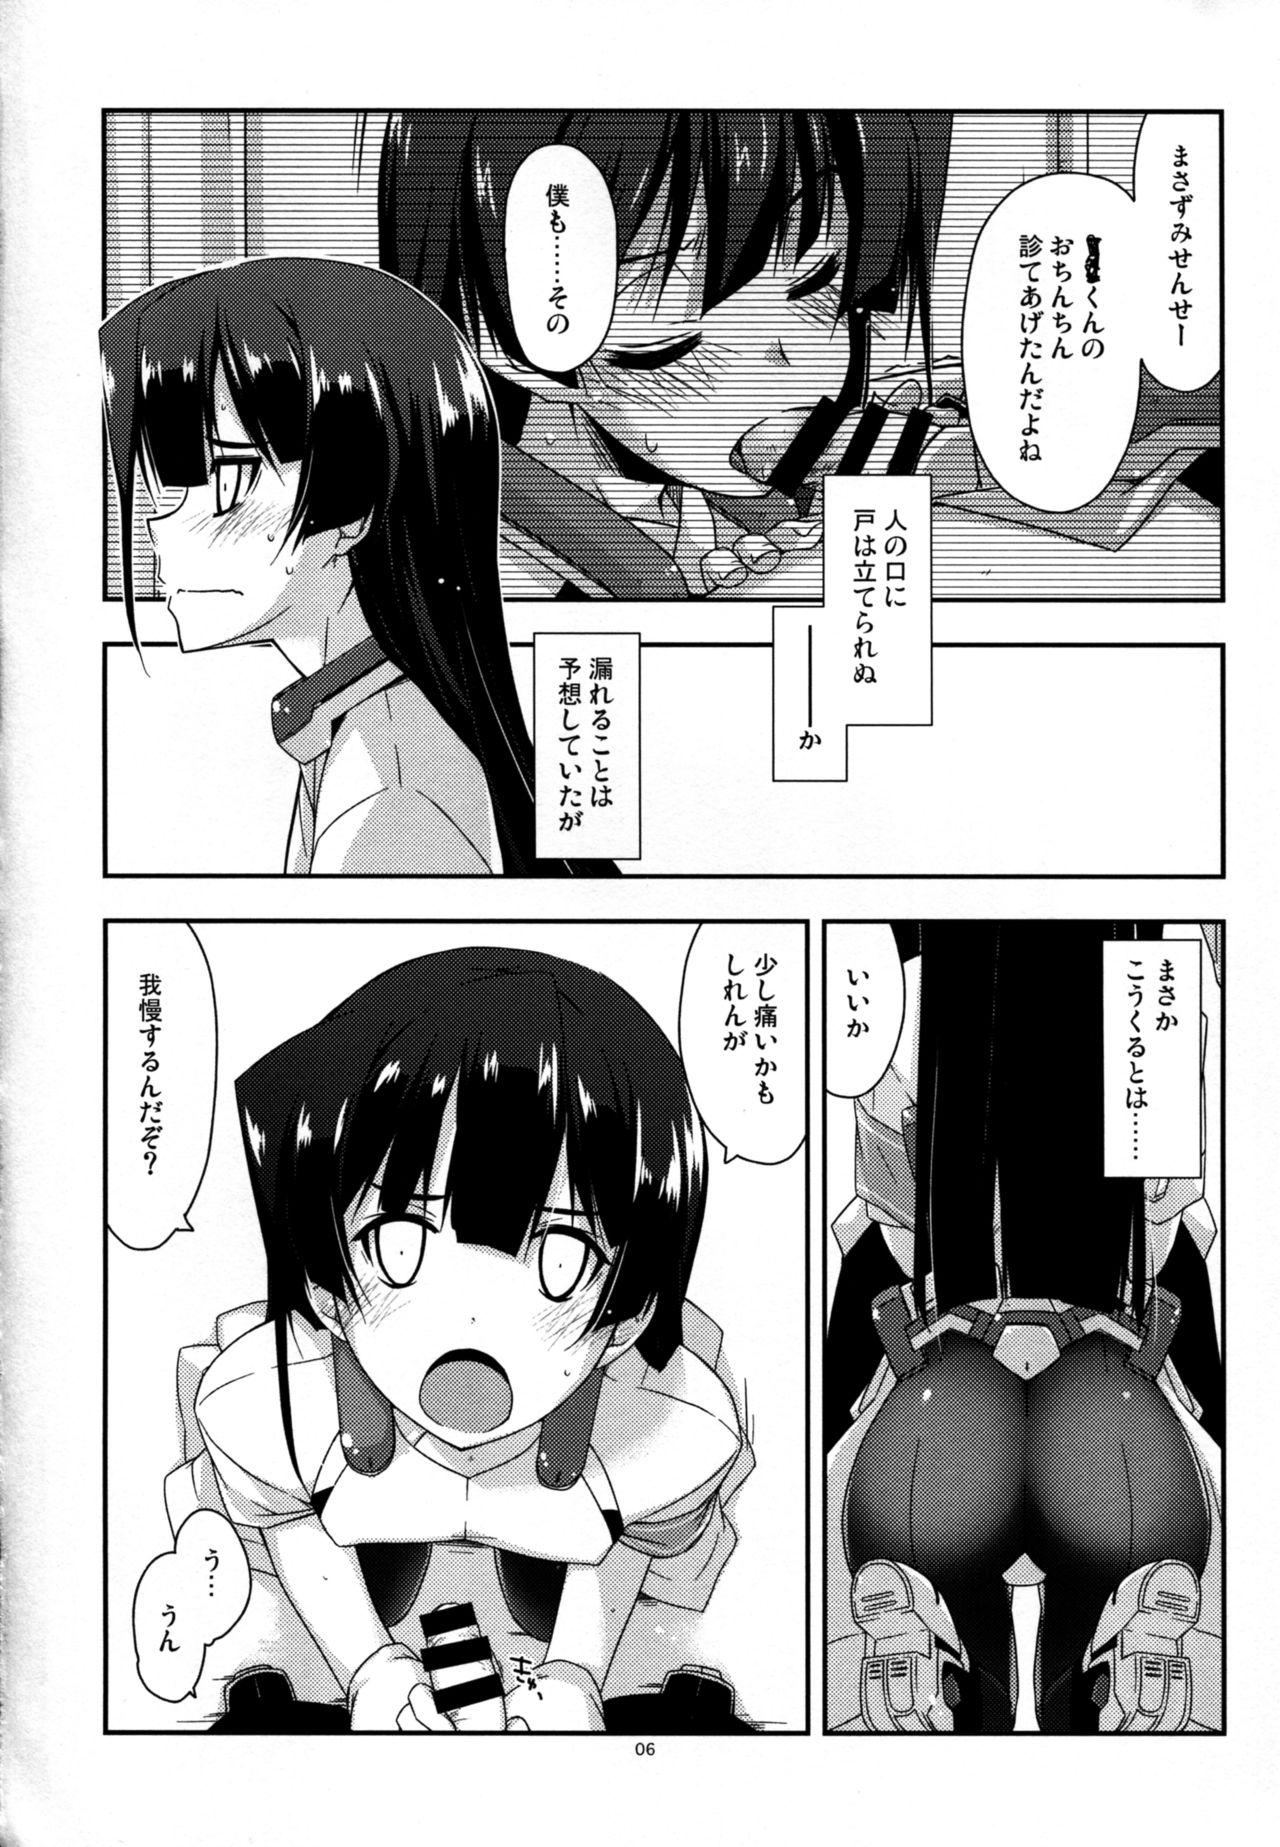 Milfs Onegai! Masazumi Sensei - Kyoukai senjou no horizon Daring - Page 6